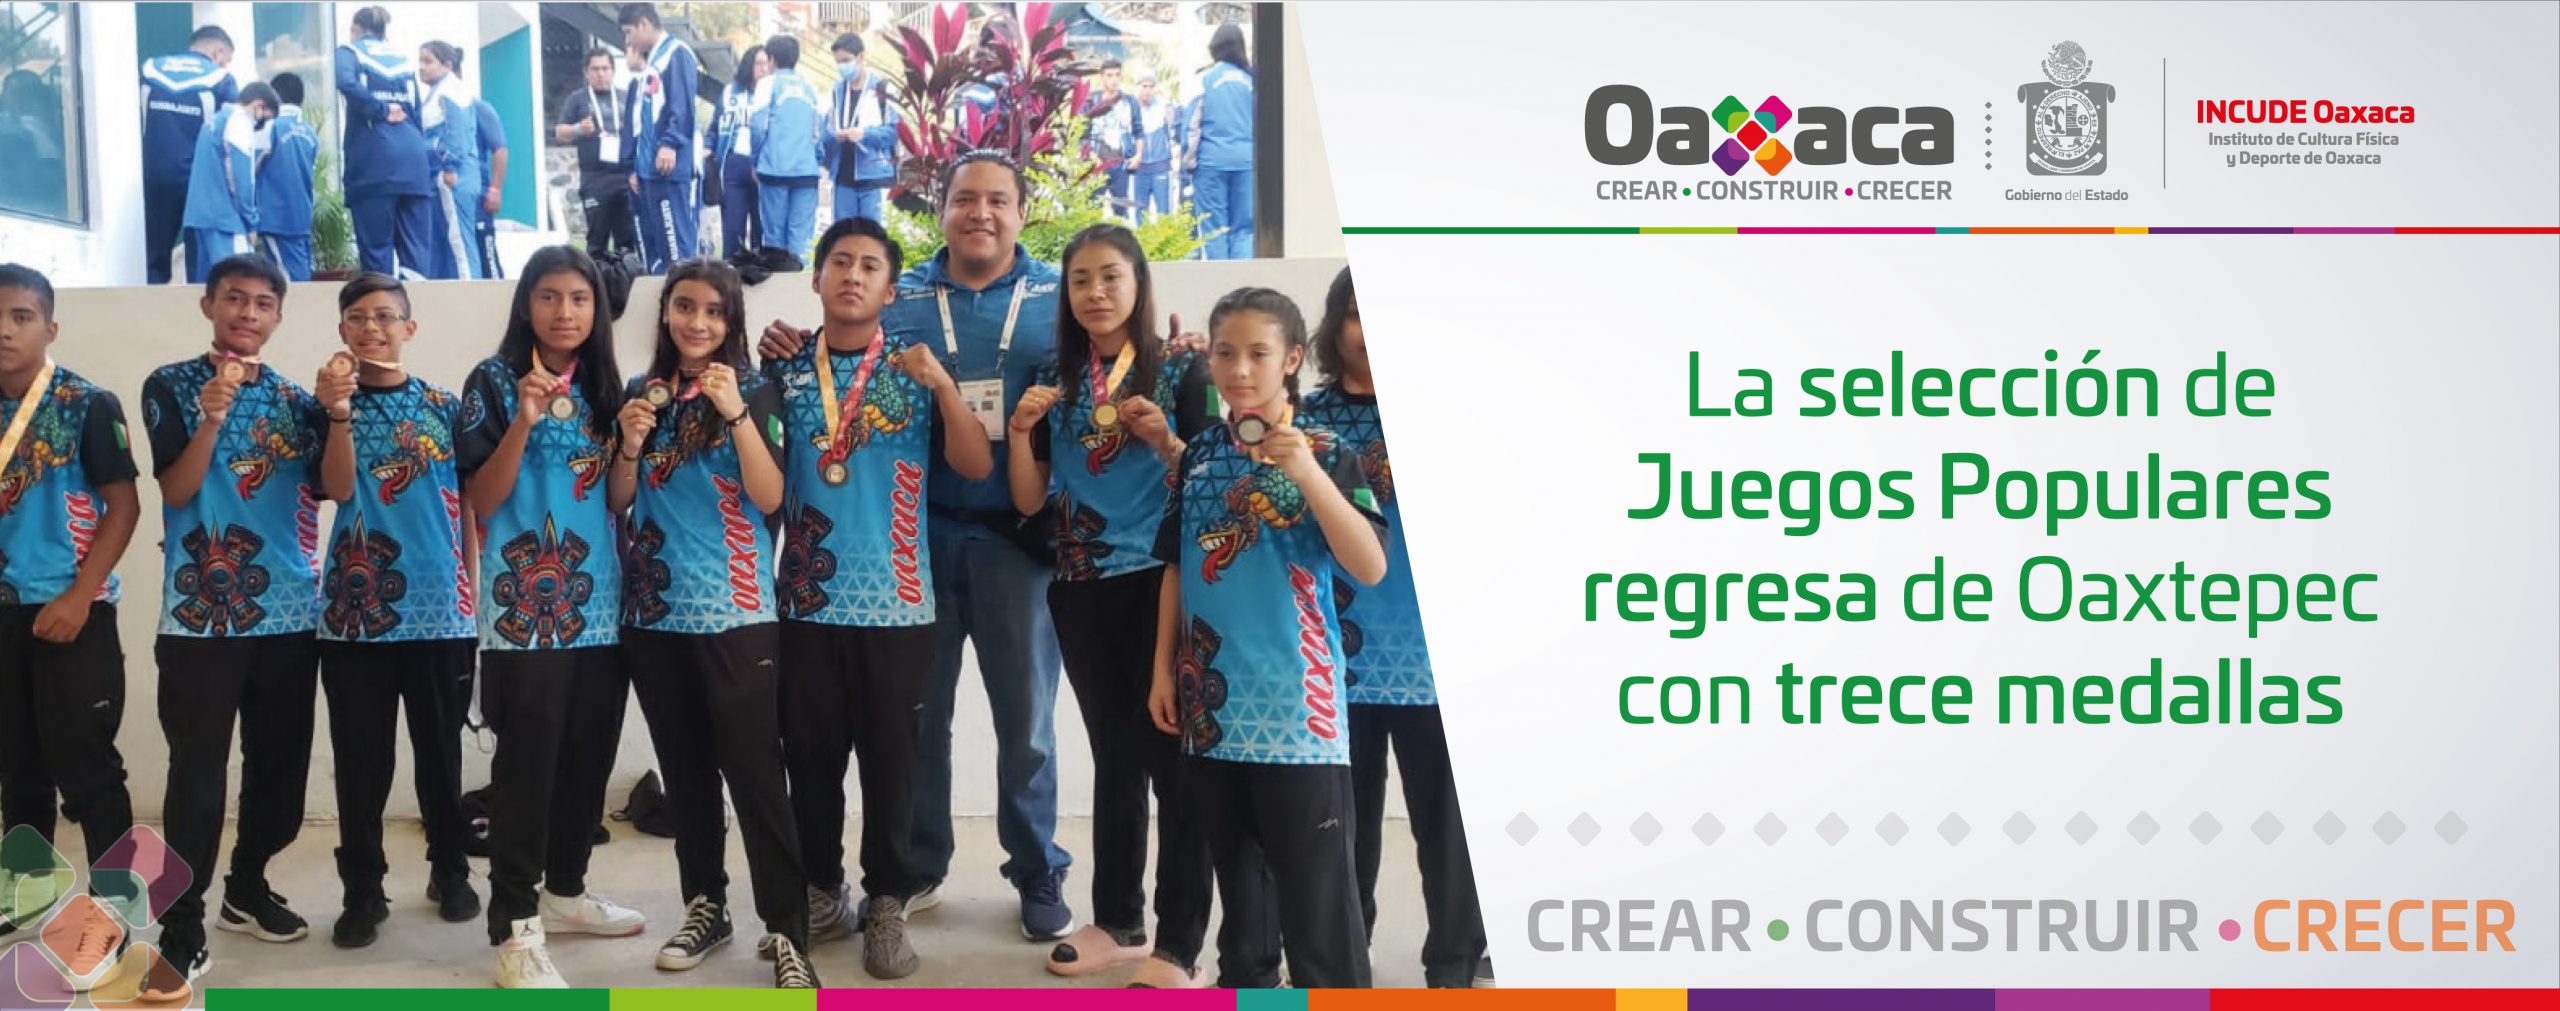 La selección de Juegos Populares regresa de Oaxtepec con trece medallas